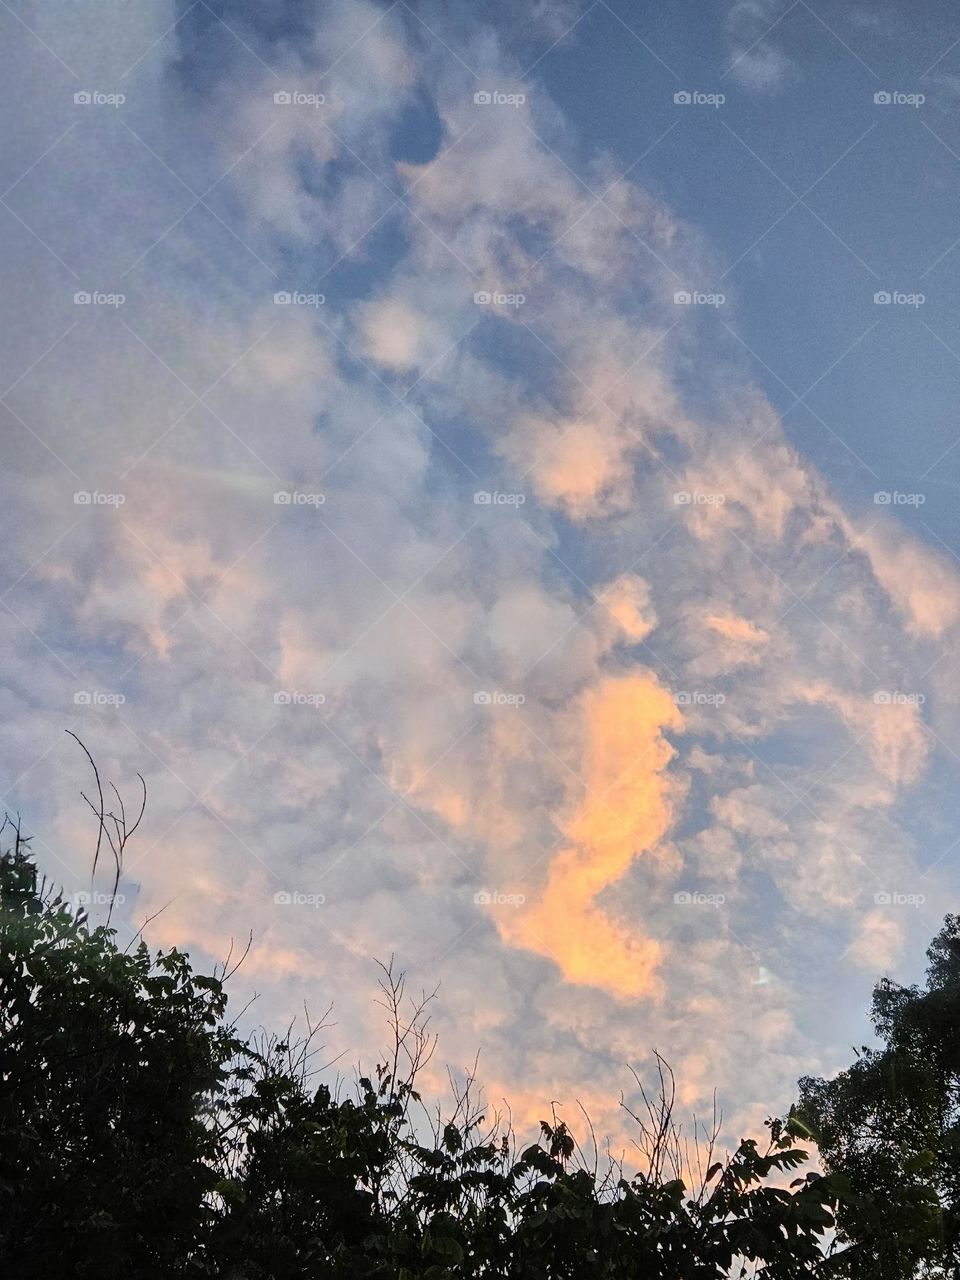 cloud that resembles fire